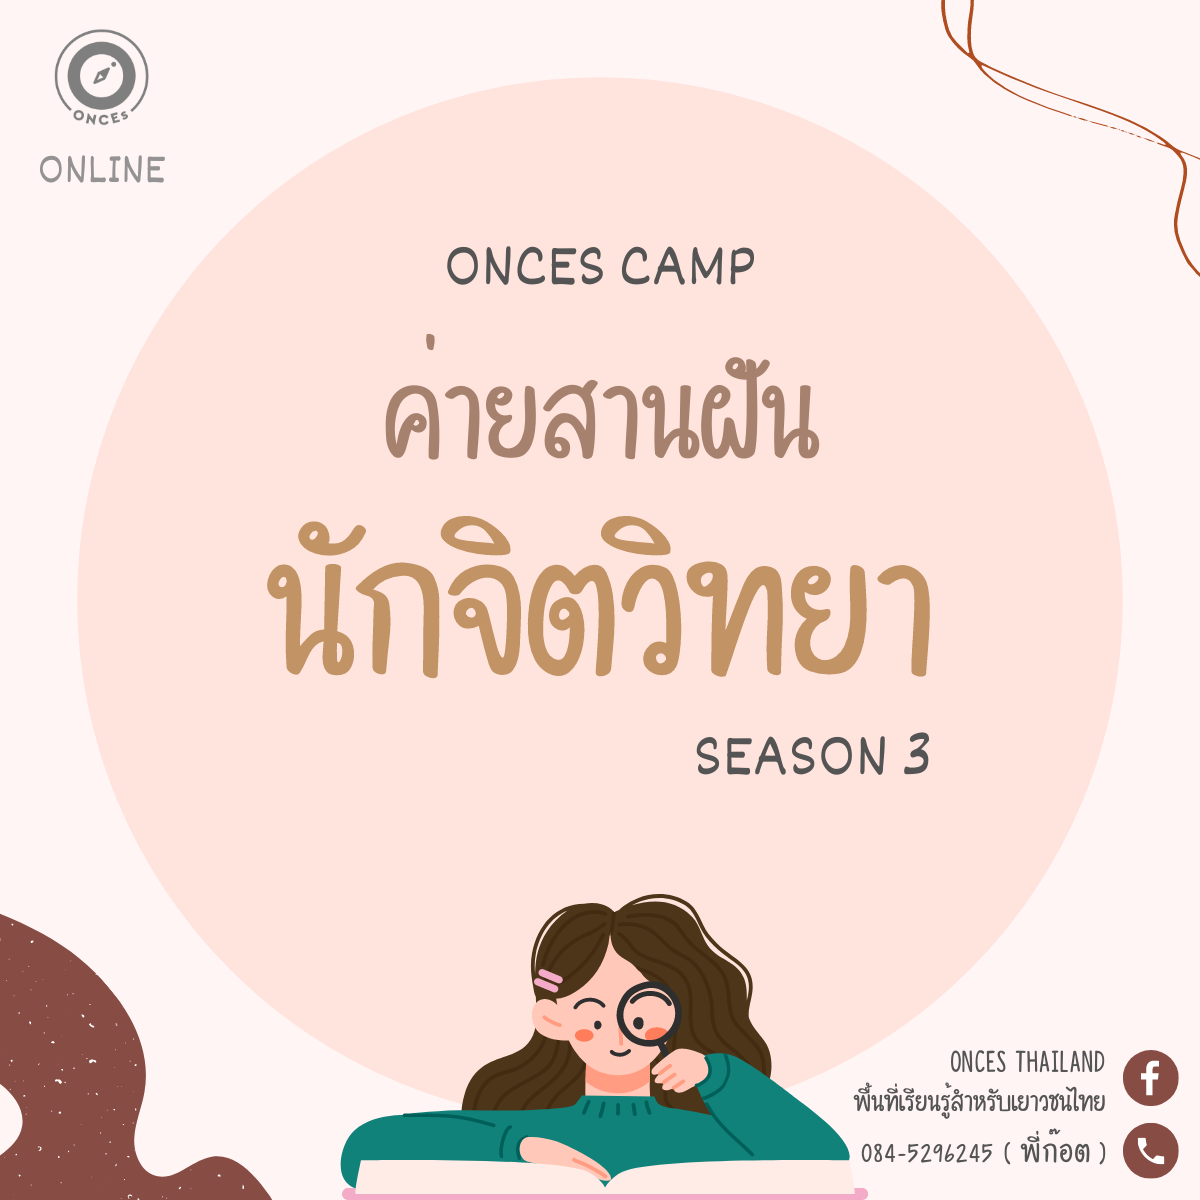 เปิดรับสมัครอีกครั้ง !! ค่ายสานฝันนักจิตวิทยา  (Psychologist camp) รุ่นที่ 3 by ONCEs  Thailand